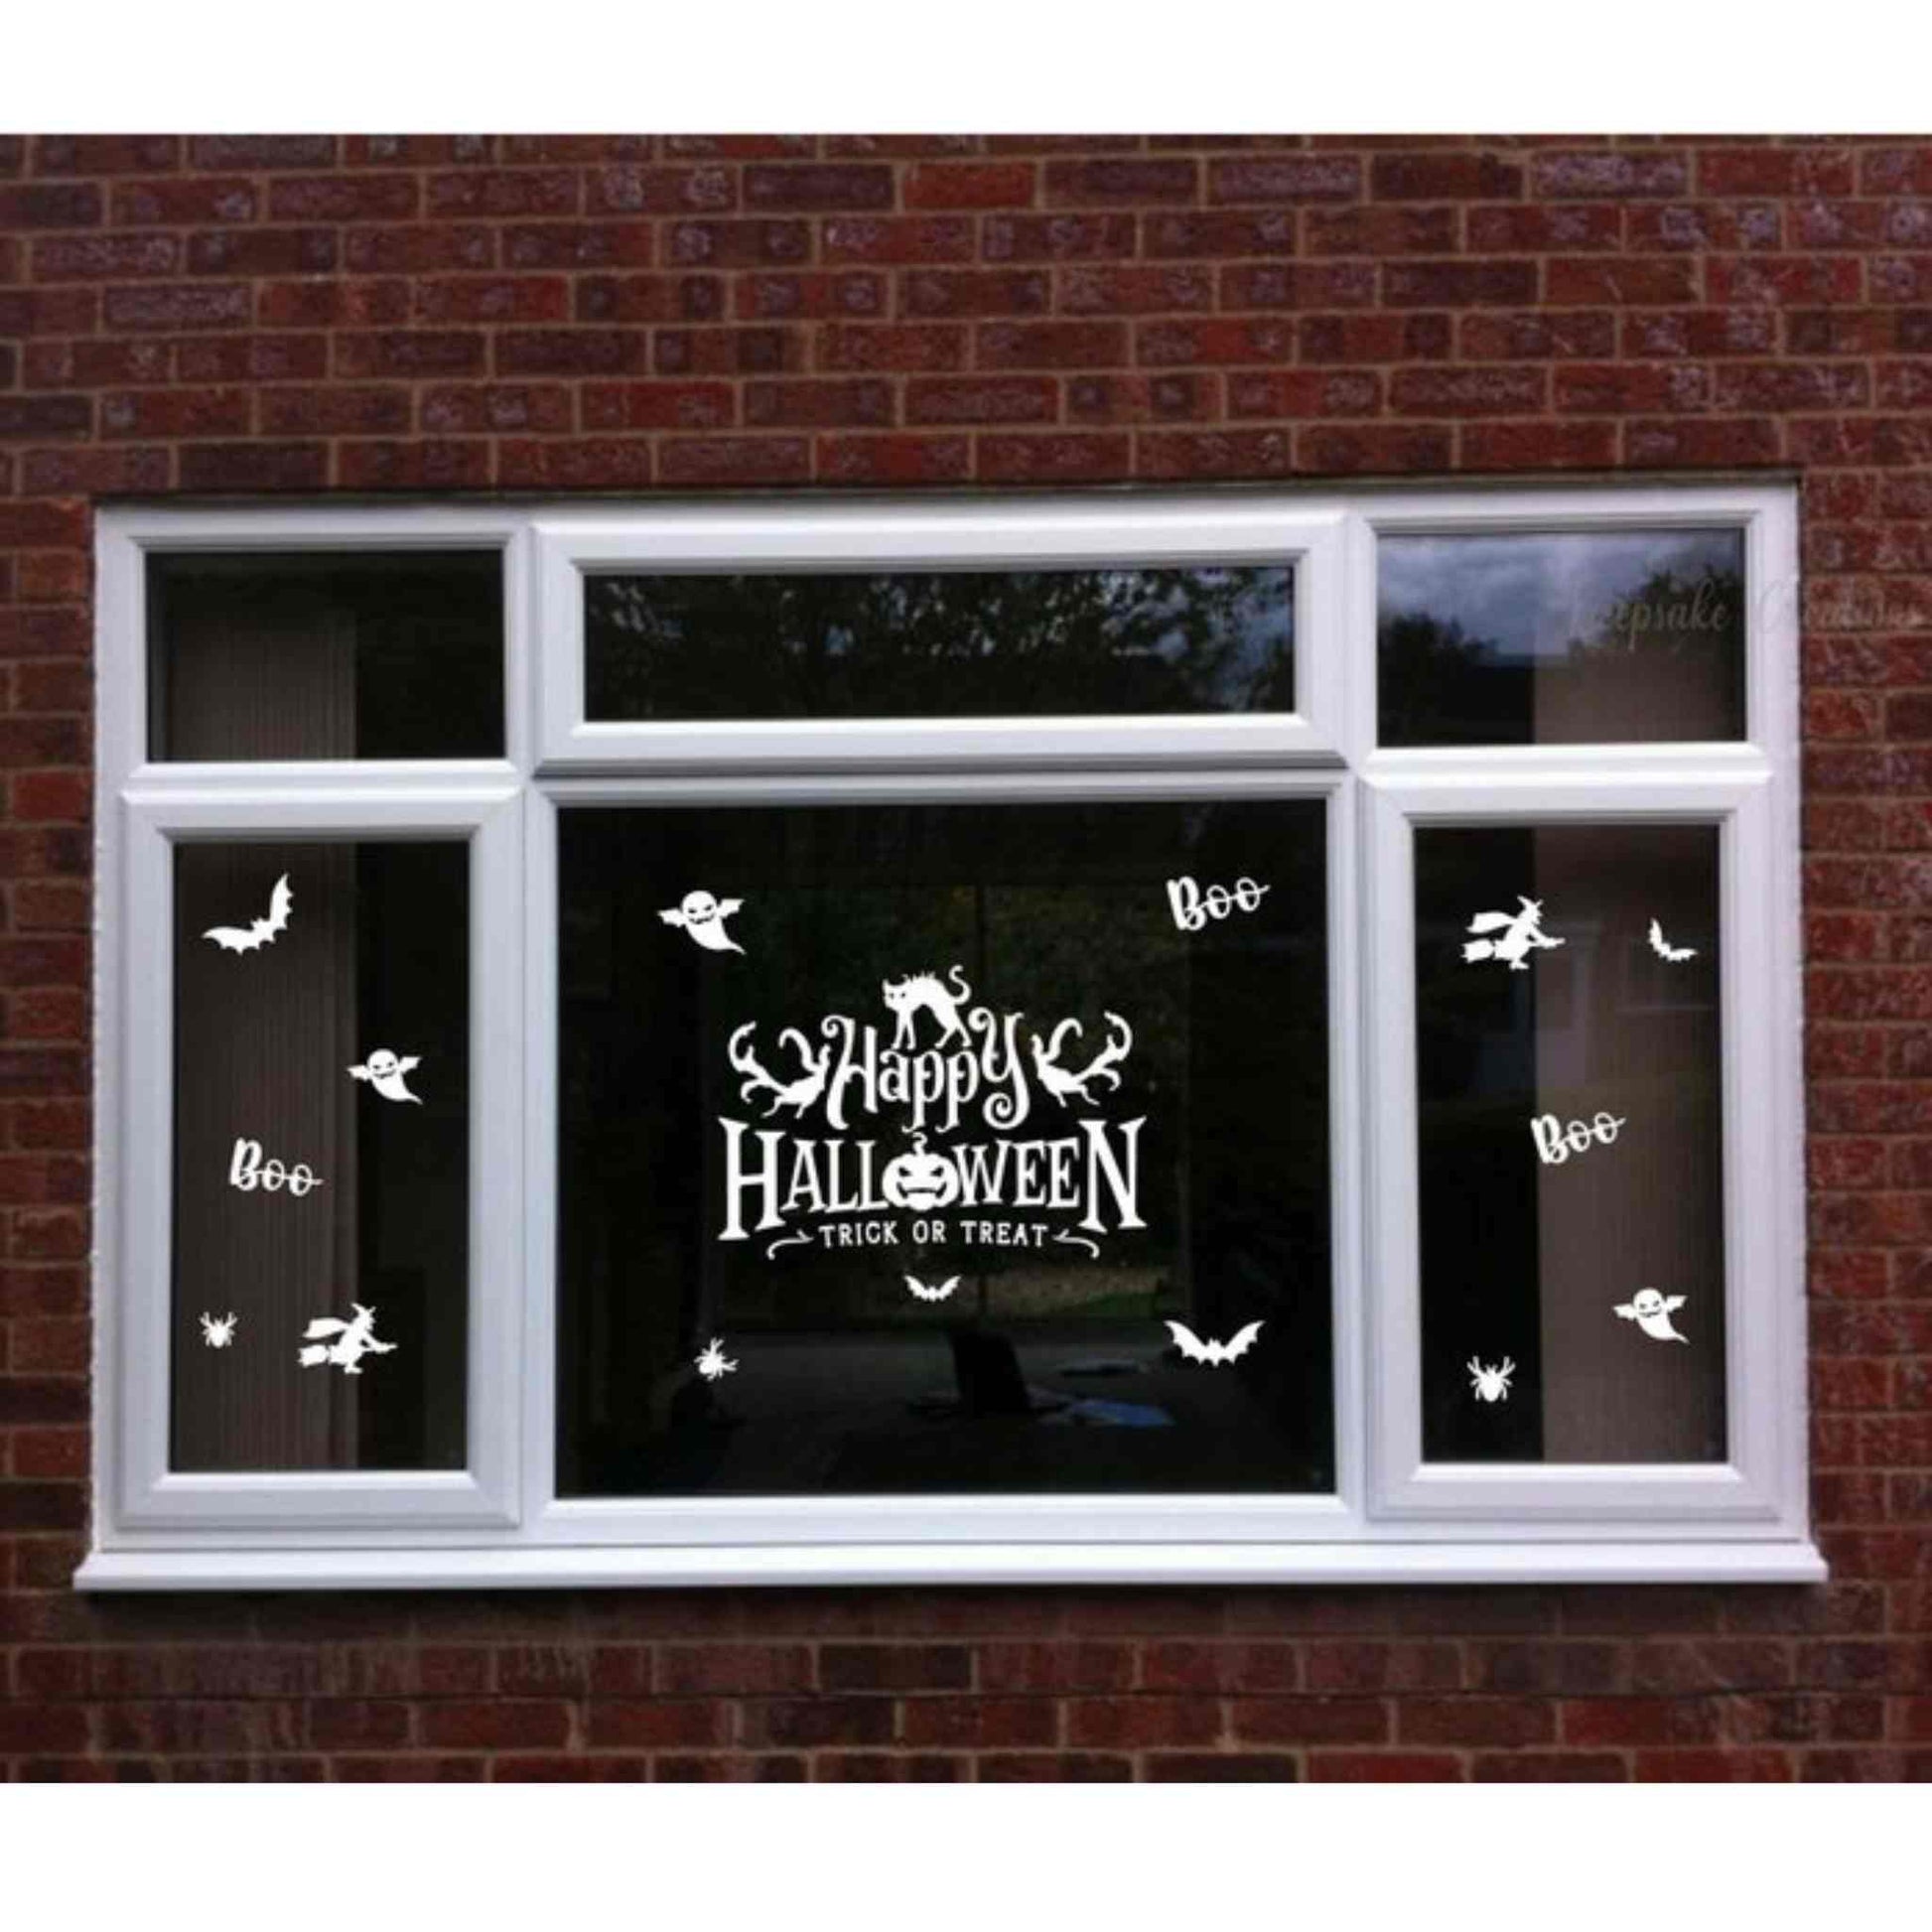 Stickere de Halloween cu lilieci si fantome si textul "Happy Halloween", albe, pentru geam sau perete.